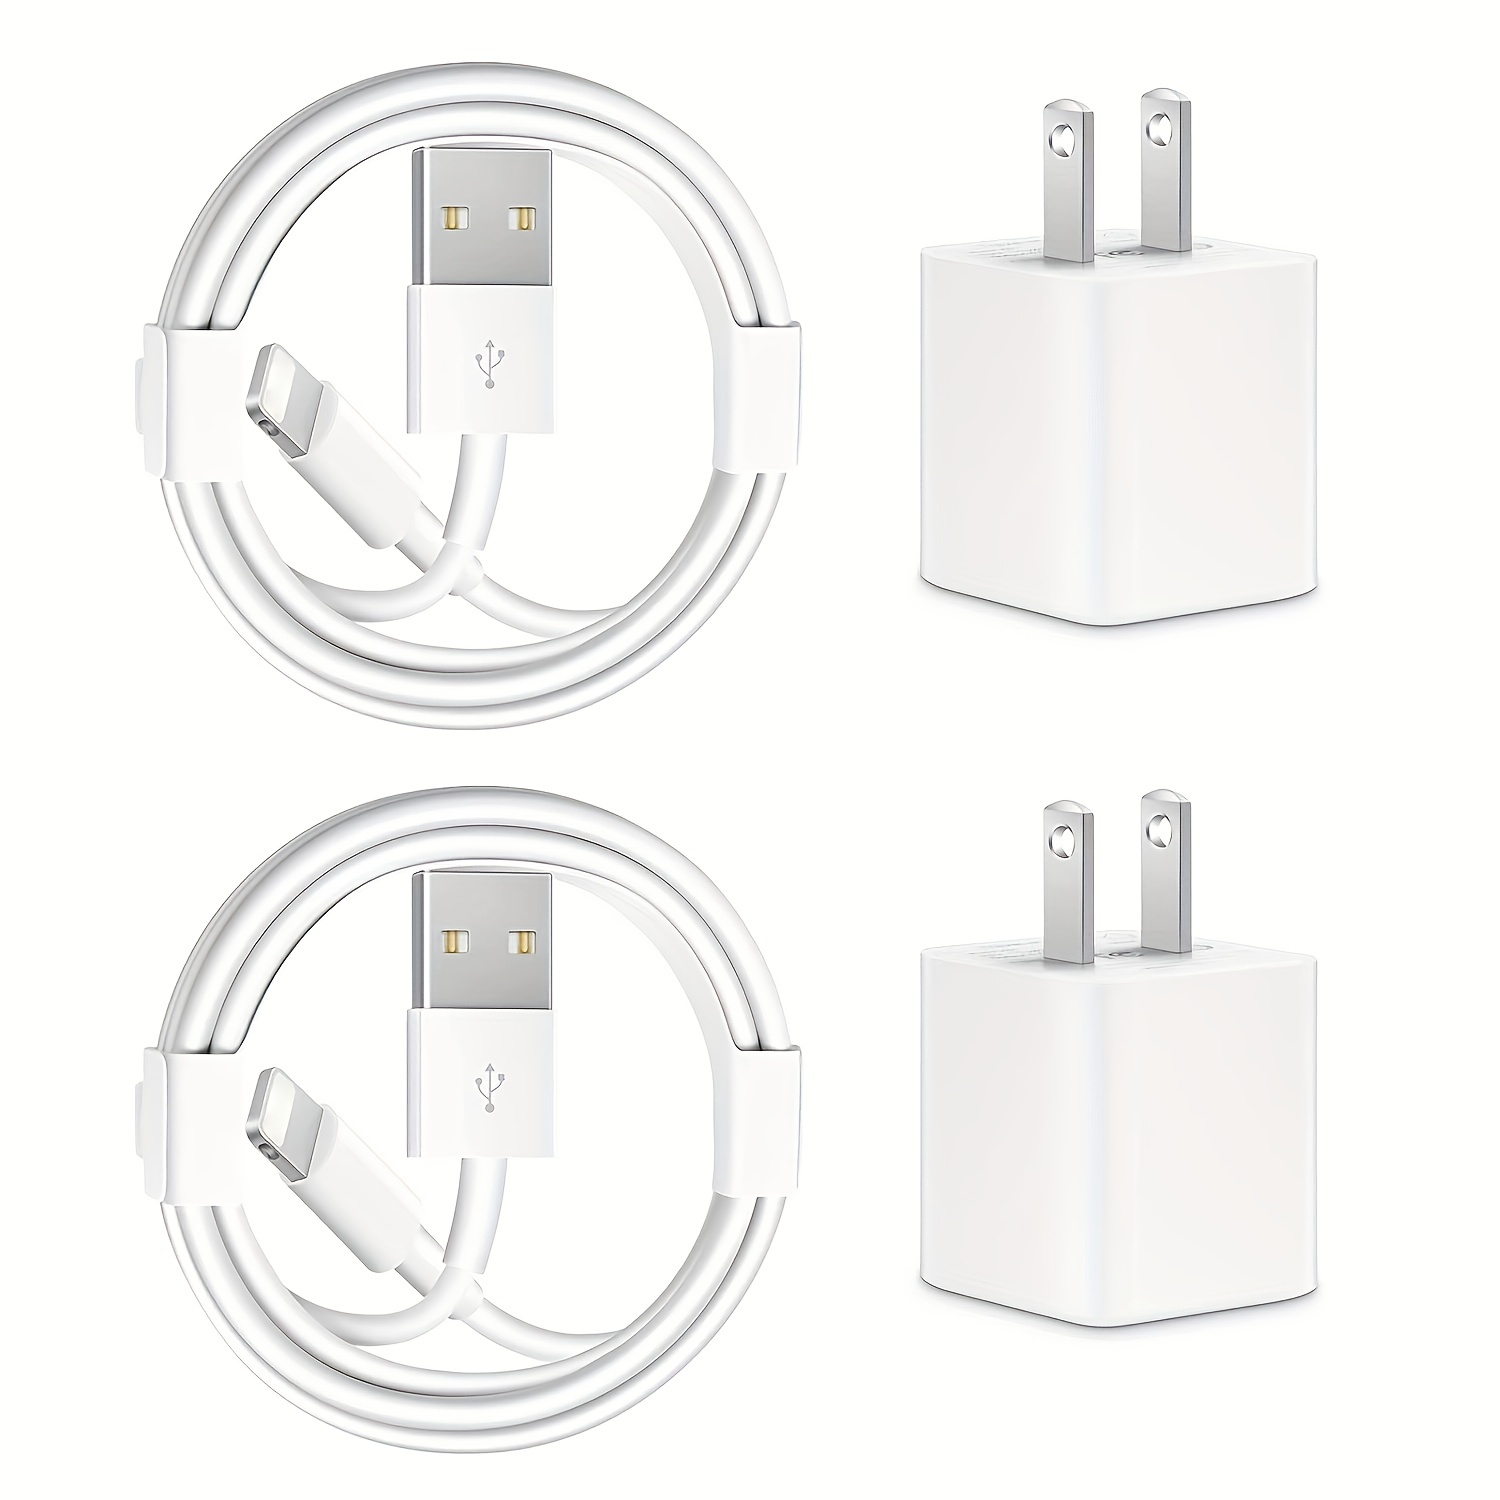 iPhone 14 13 Chargeur Rapide [MFi Certifié], 20W USB C Chargeur avec Câble  iPhone Apple Original 2M,Type C Adaptateur Secteur pour Apple iPhone 14  Plus/13 Pro Max/12 Mini/11 Pro/XR/XS/SE/8/7/6s/iPad en destockage et